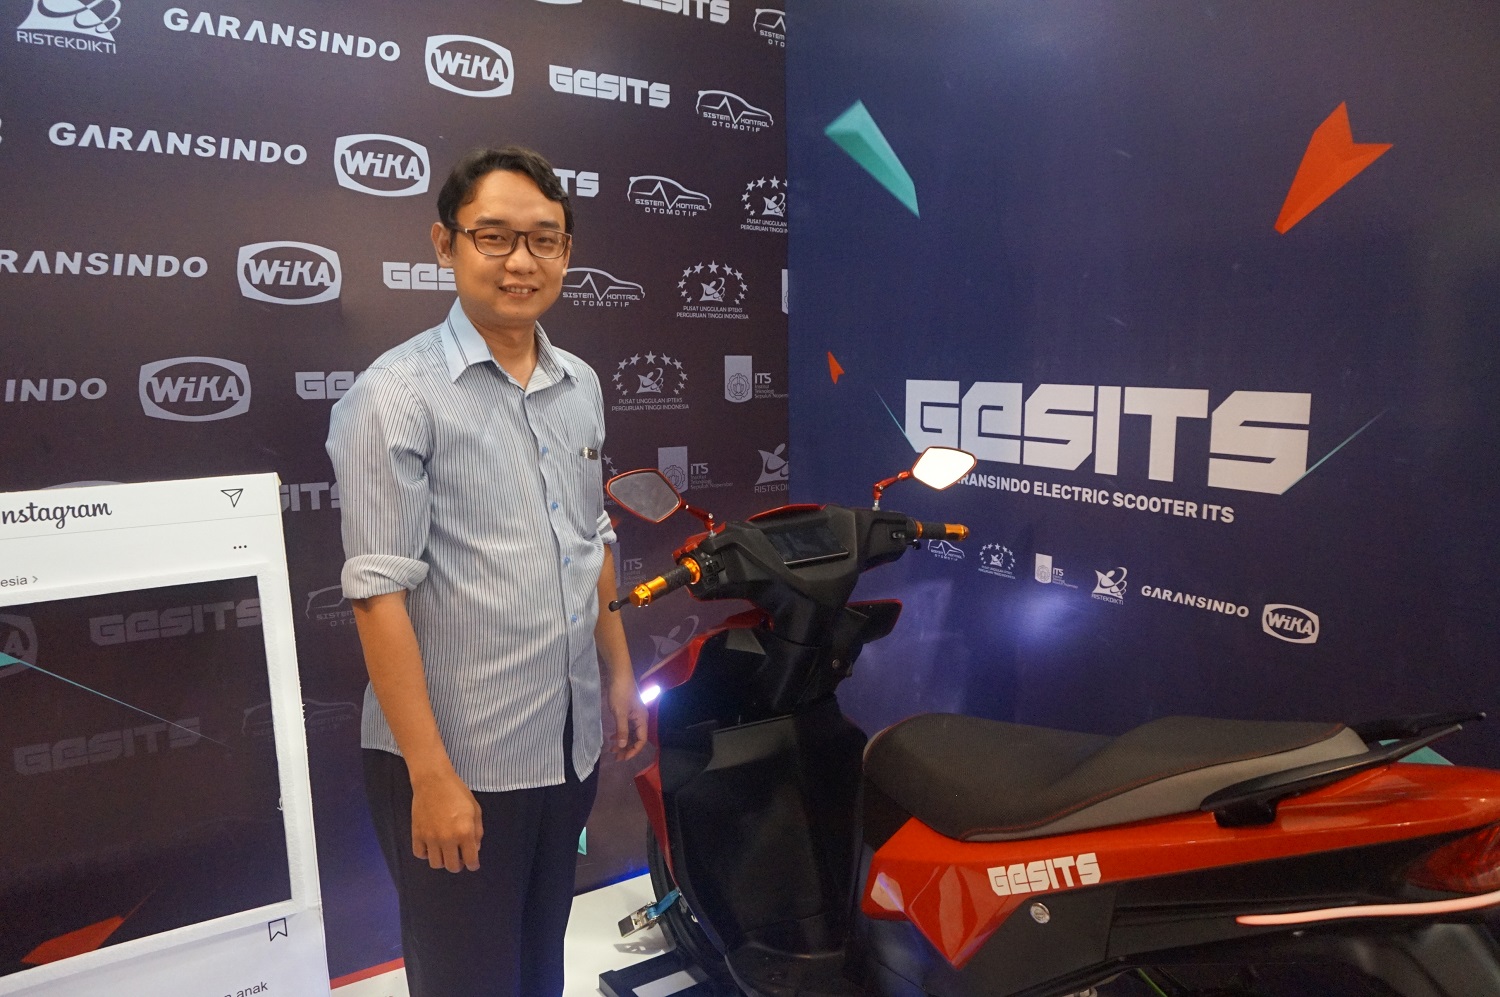 Alief Wikarta bersama GESITS yang dipamerkan di Ritech Expo 2017, Makassar